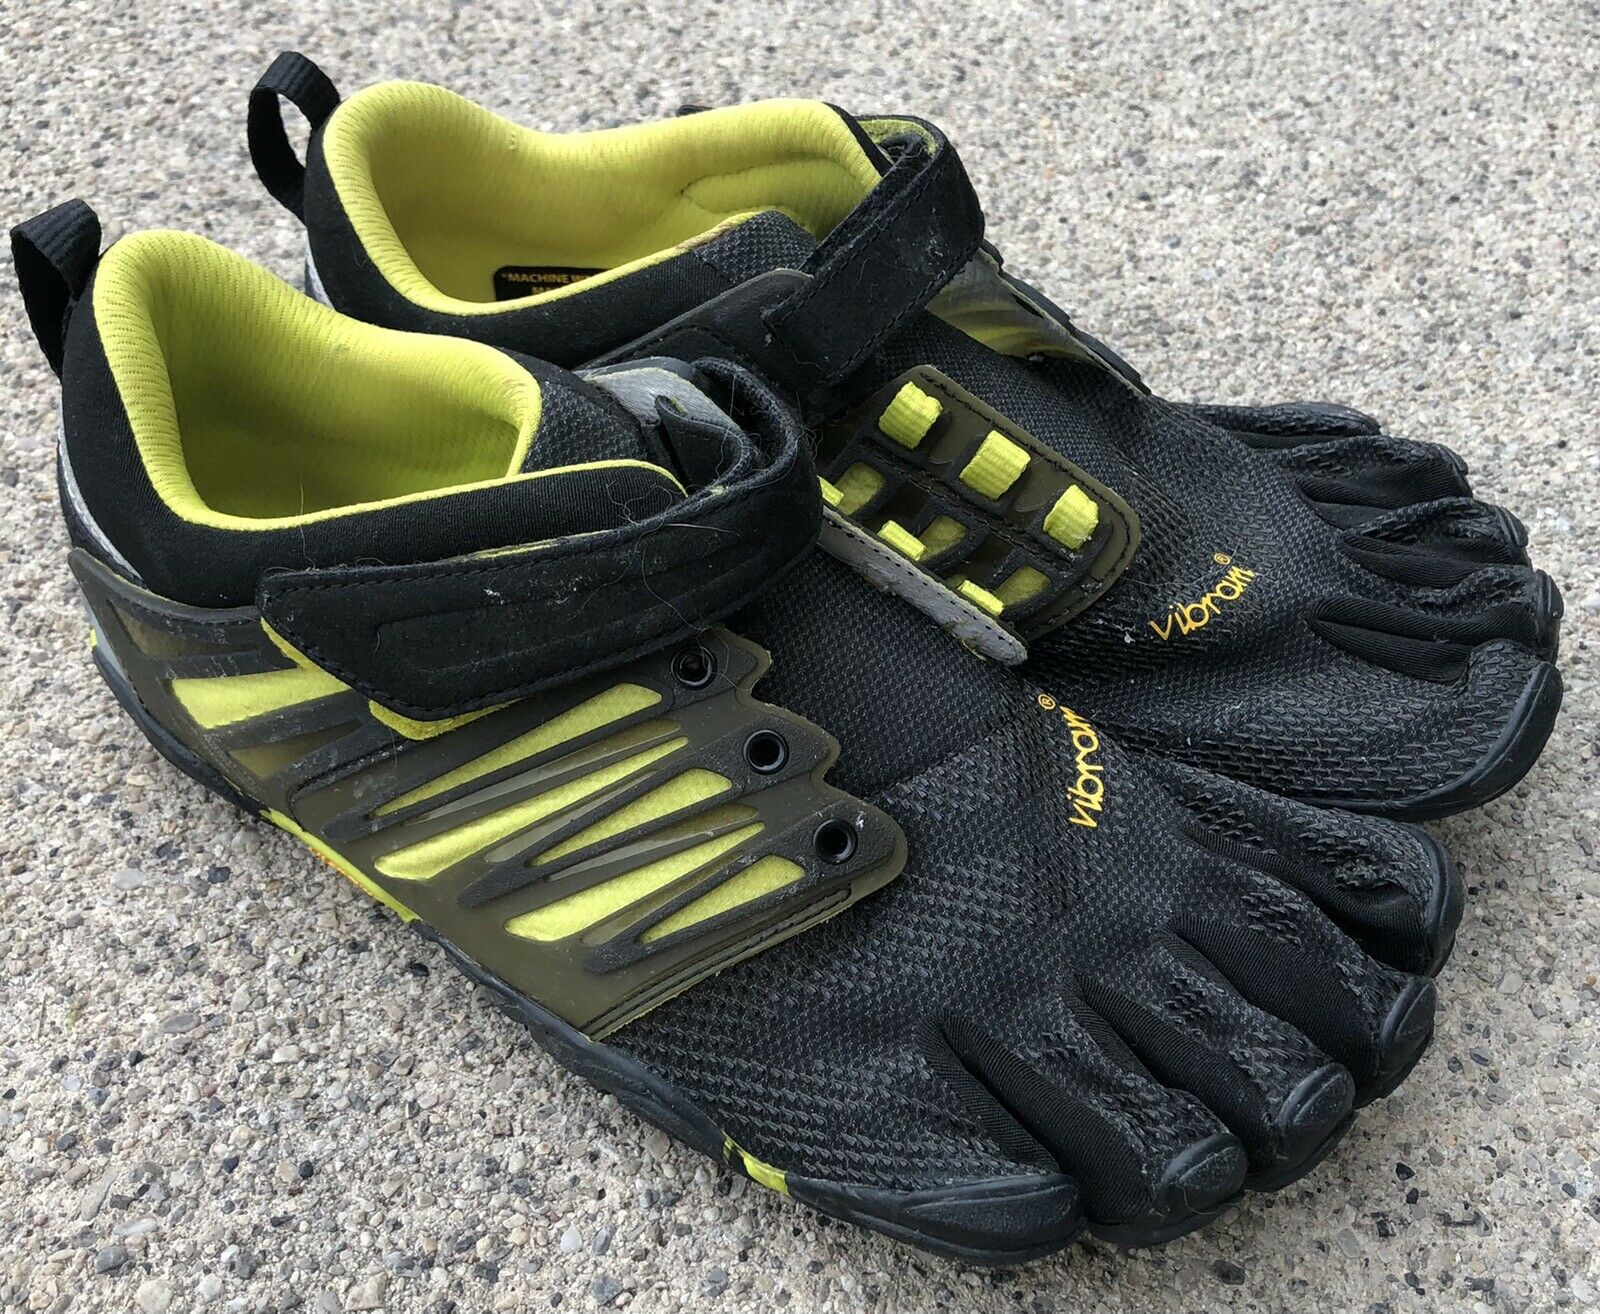 Five Fingers V Train Toe Shoes Black Neon Yellow MISSING LACES Men US8.5-9 EU41